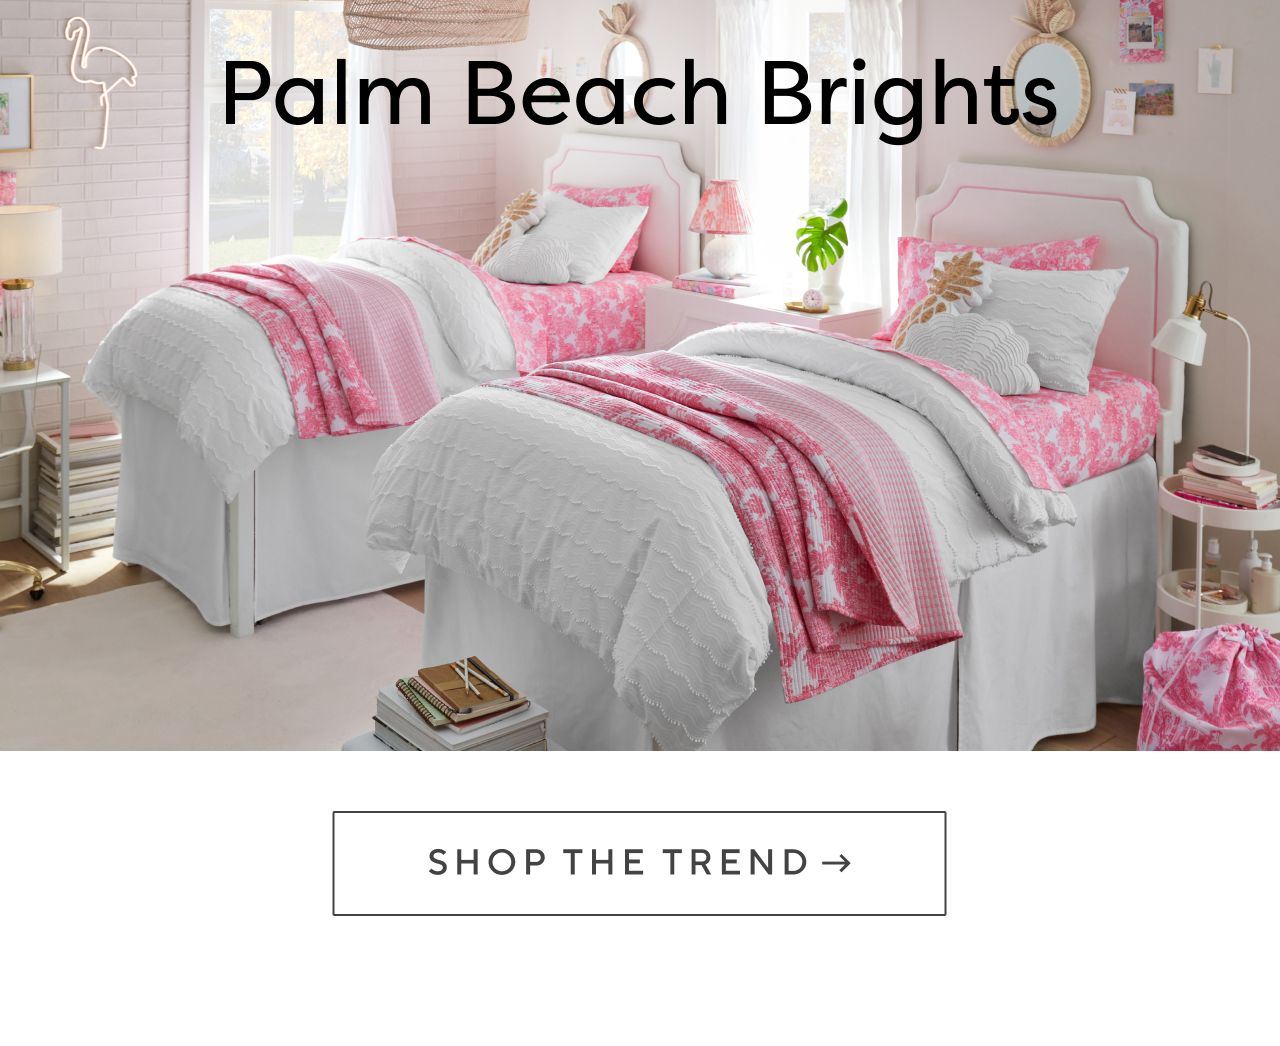 Palm beach brights